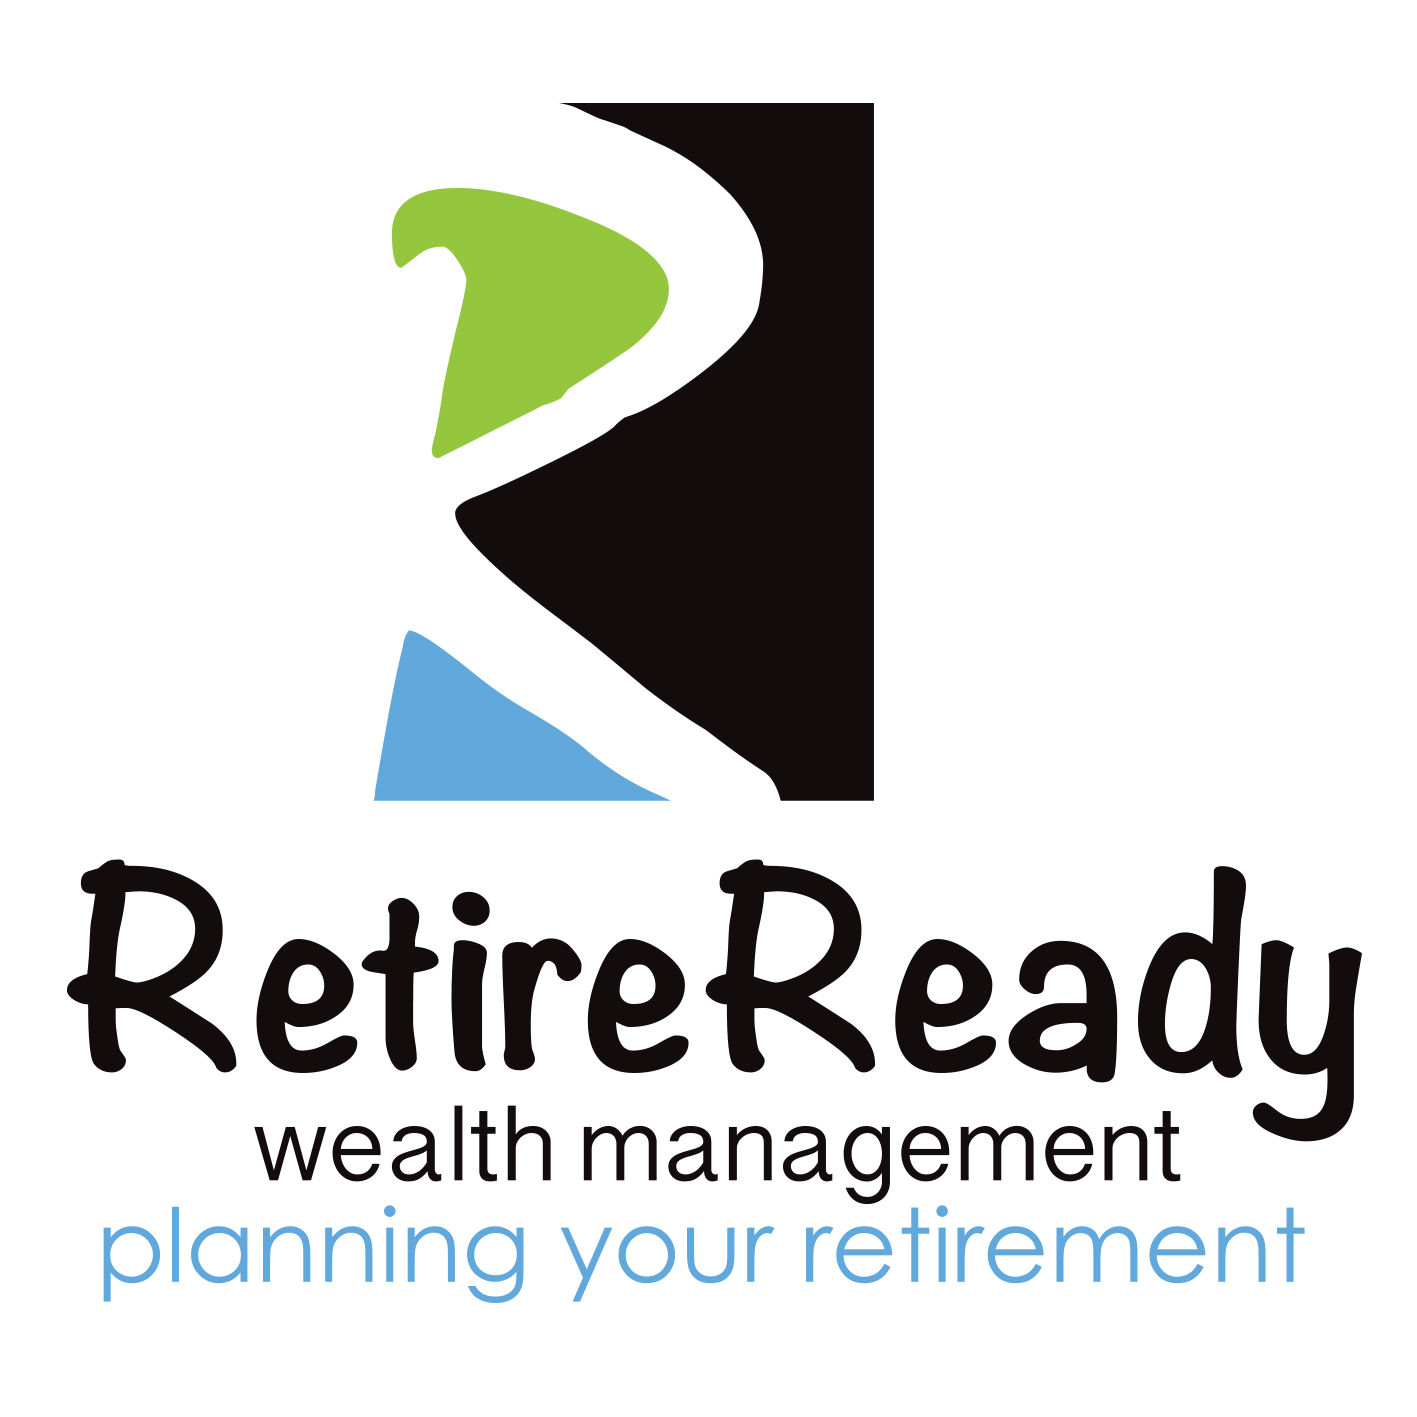 Die Western Australia, Australia Agentur Abundance Web Designs half Retire Ready Wealth Management dabei, sein Geschäft mit SEO und digitalem Marketing zu vergrößern